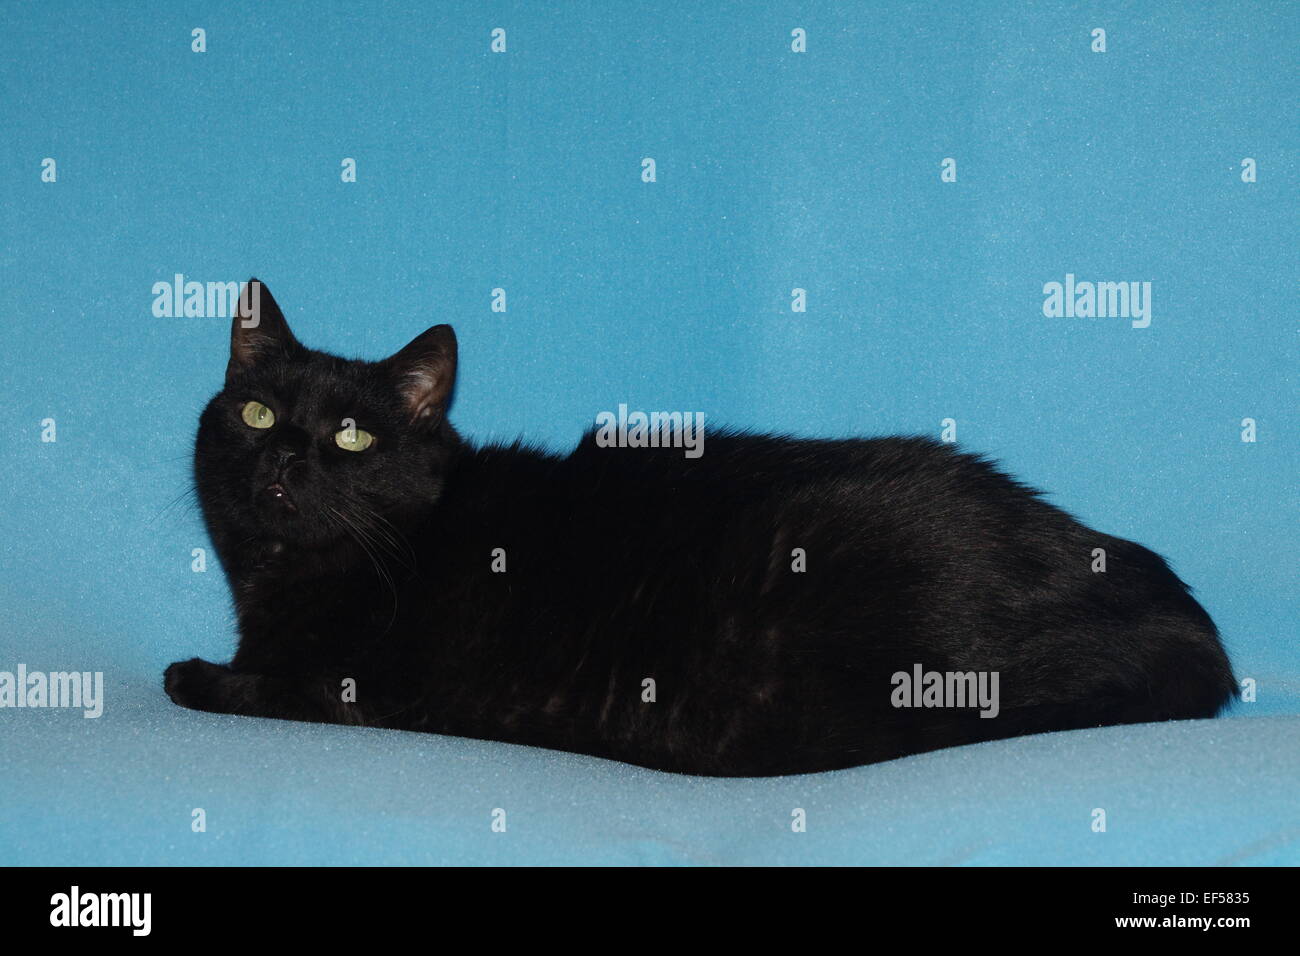 Katze 11 Jahre liegt auf einem blauen Tuch Foto Stock